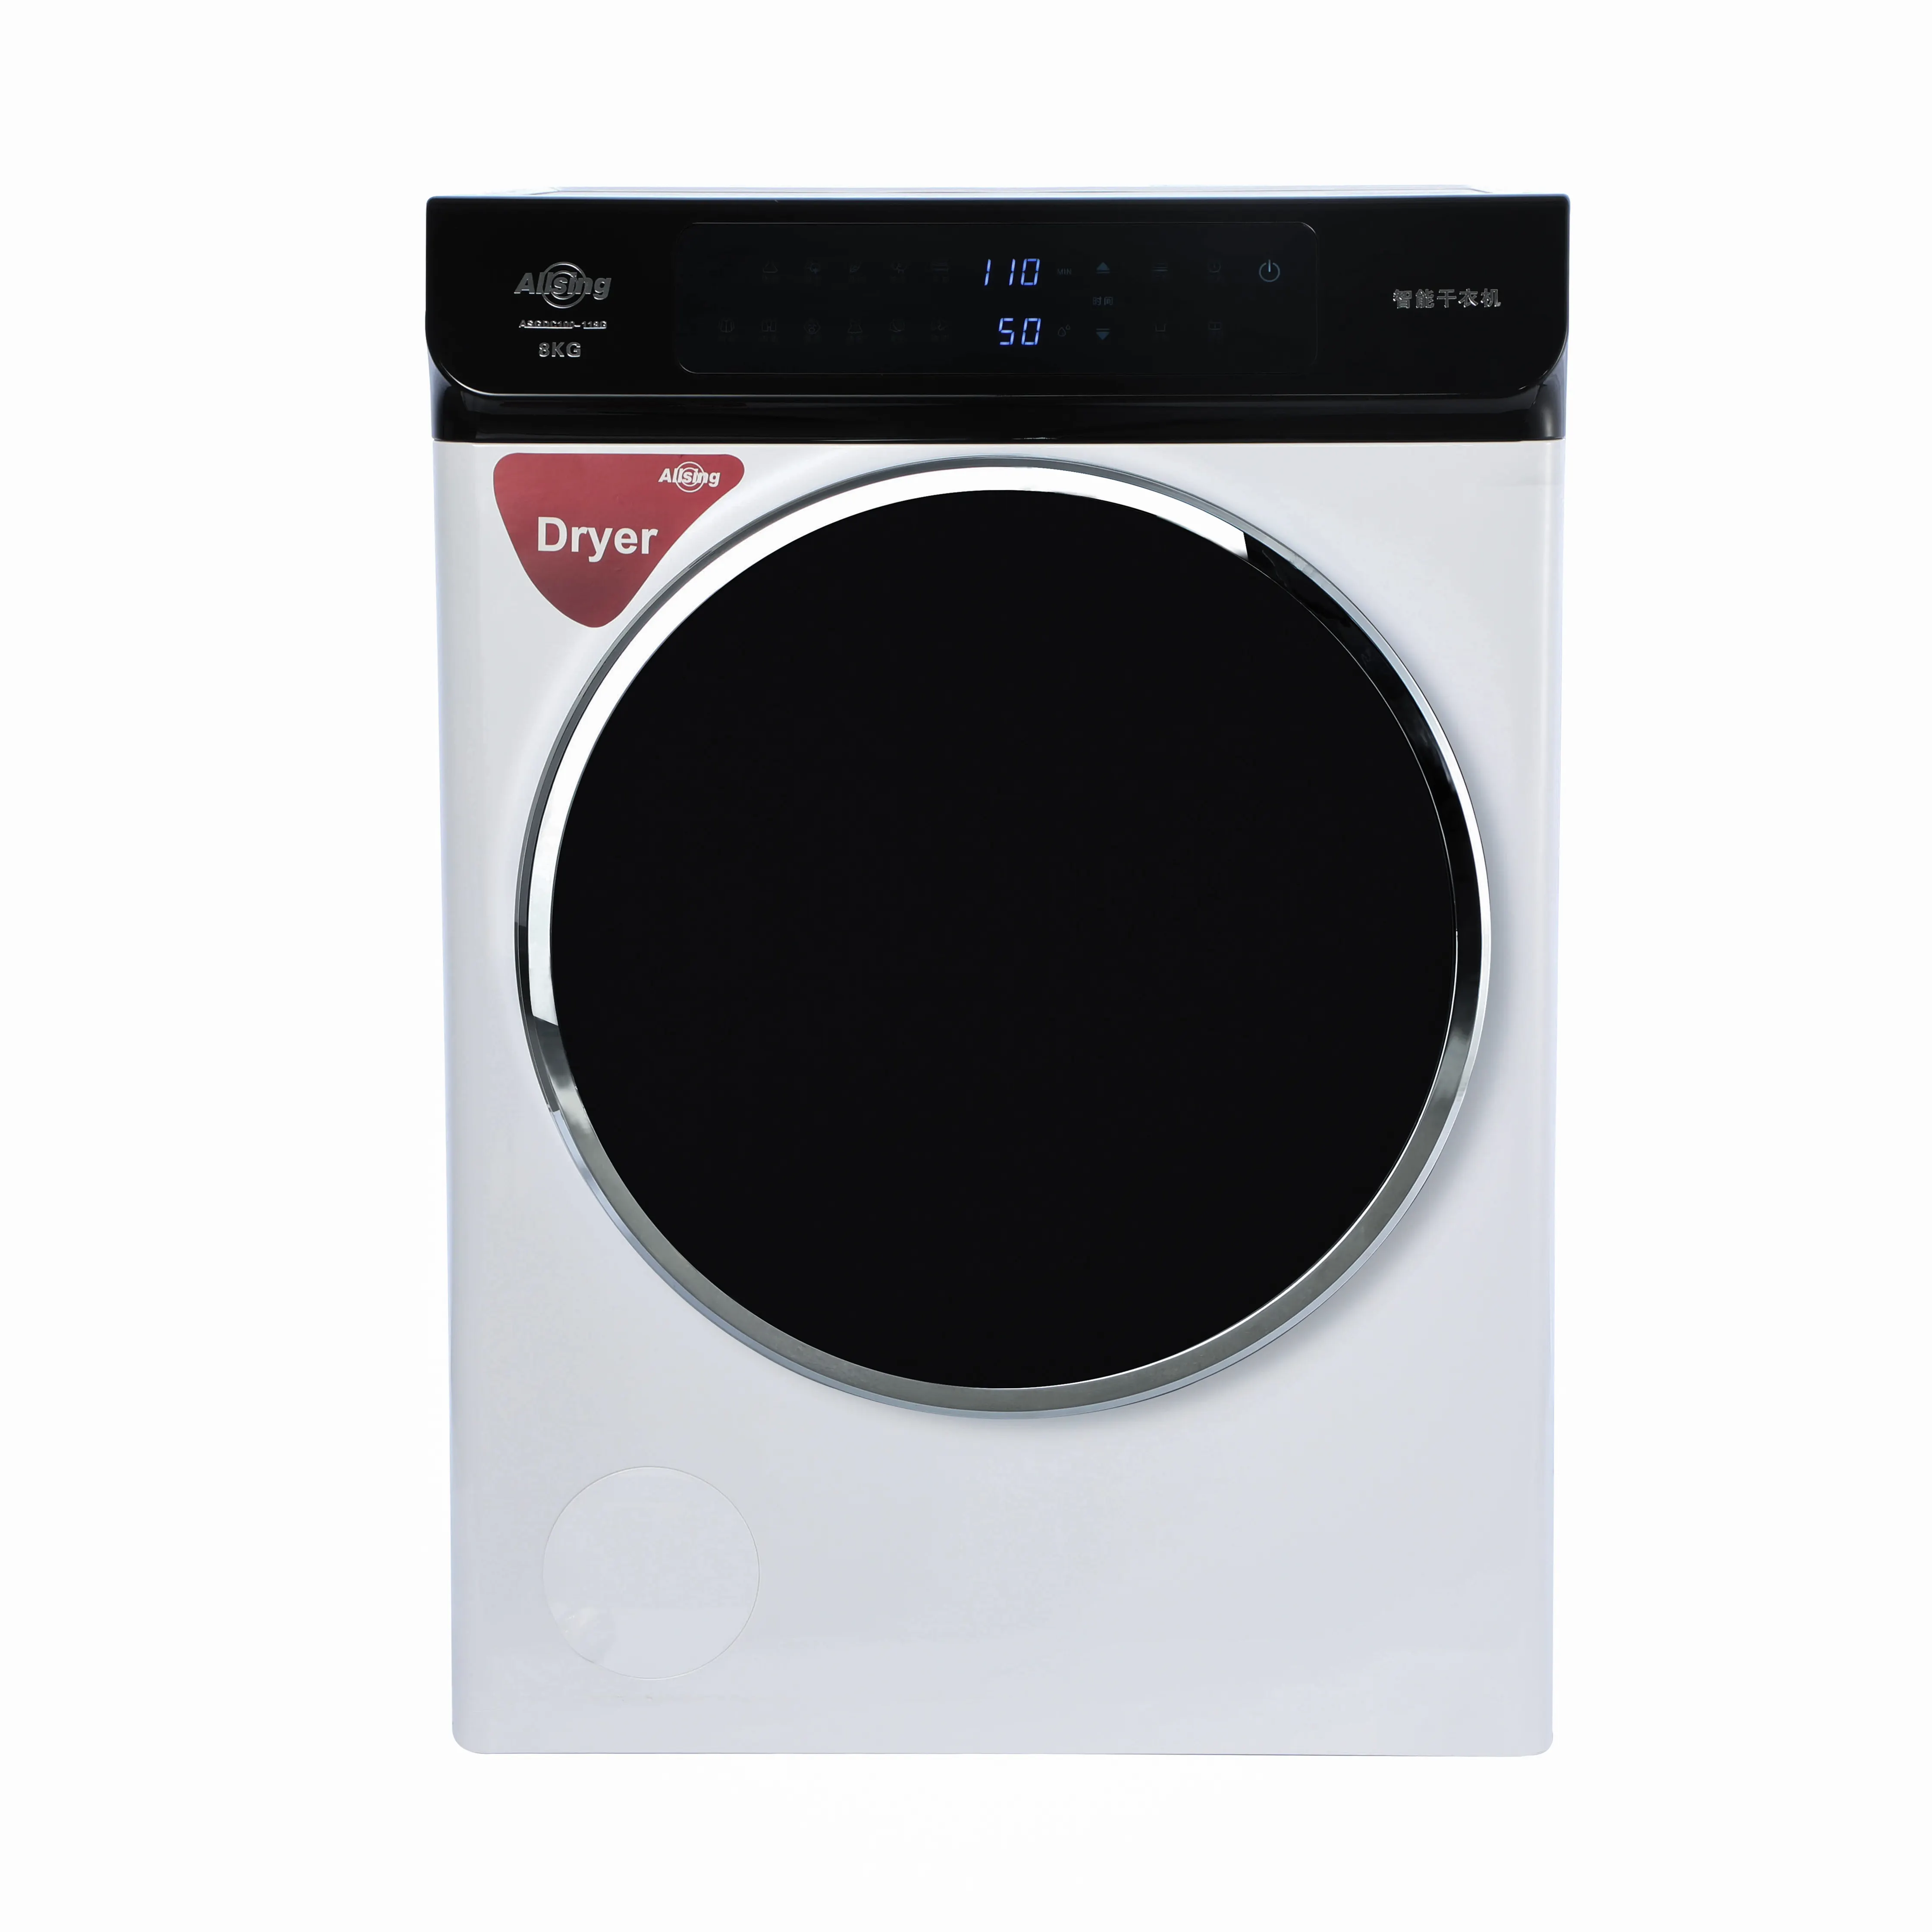 Home Kompakter intelligenter Wäsche trockner sec adora de repa porta til secador de ropa